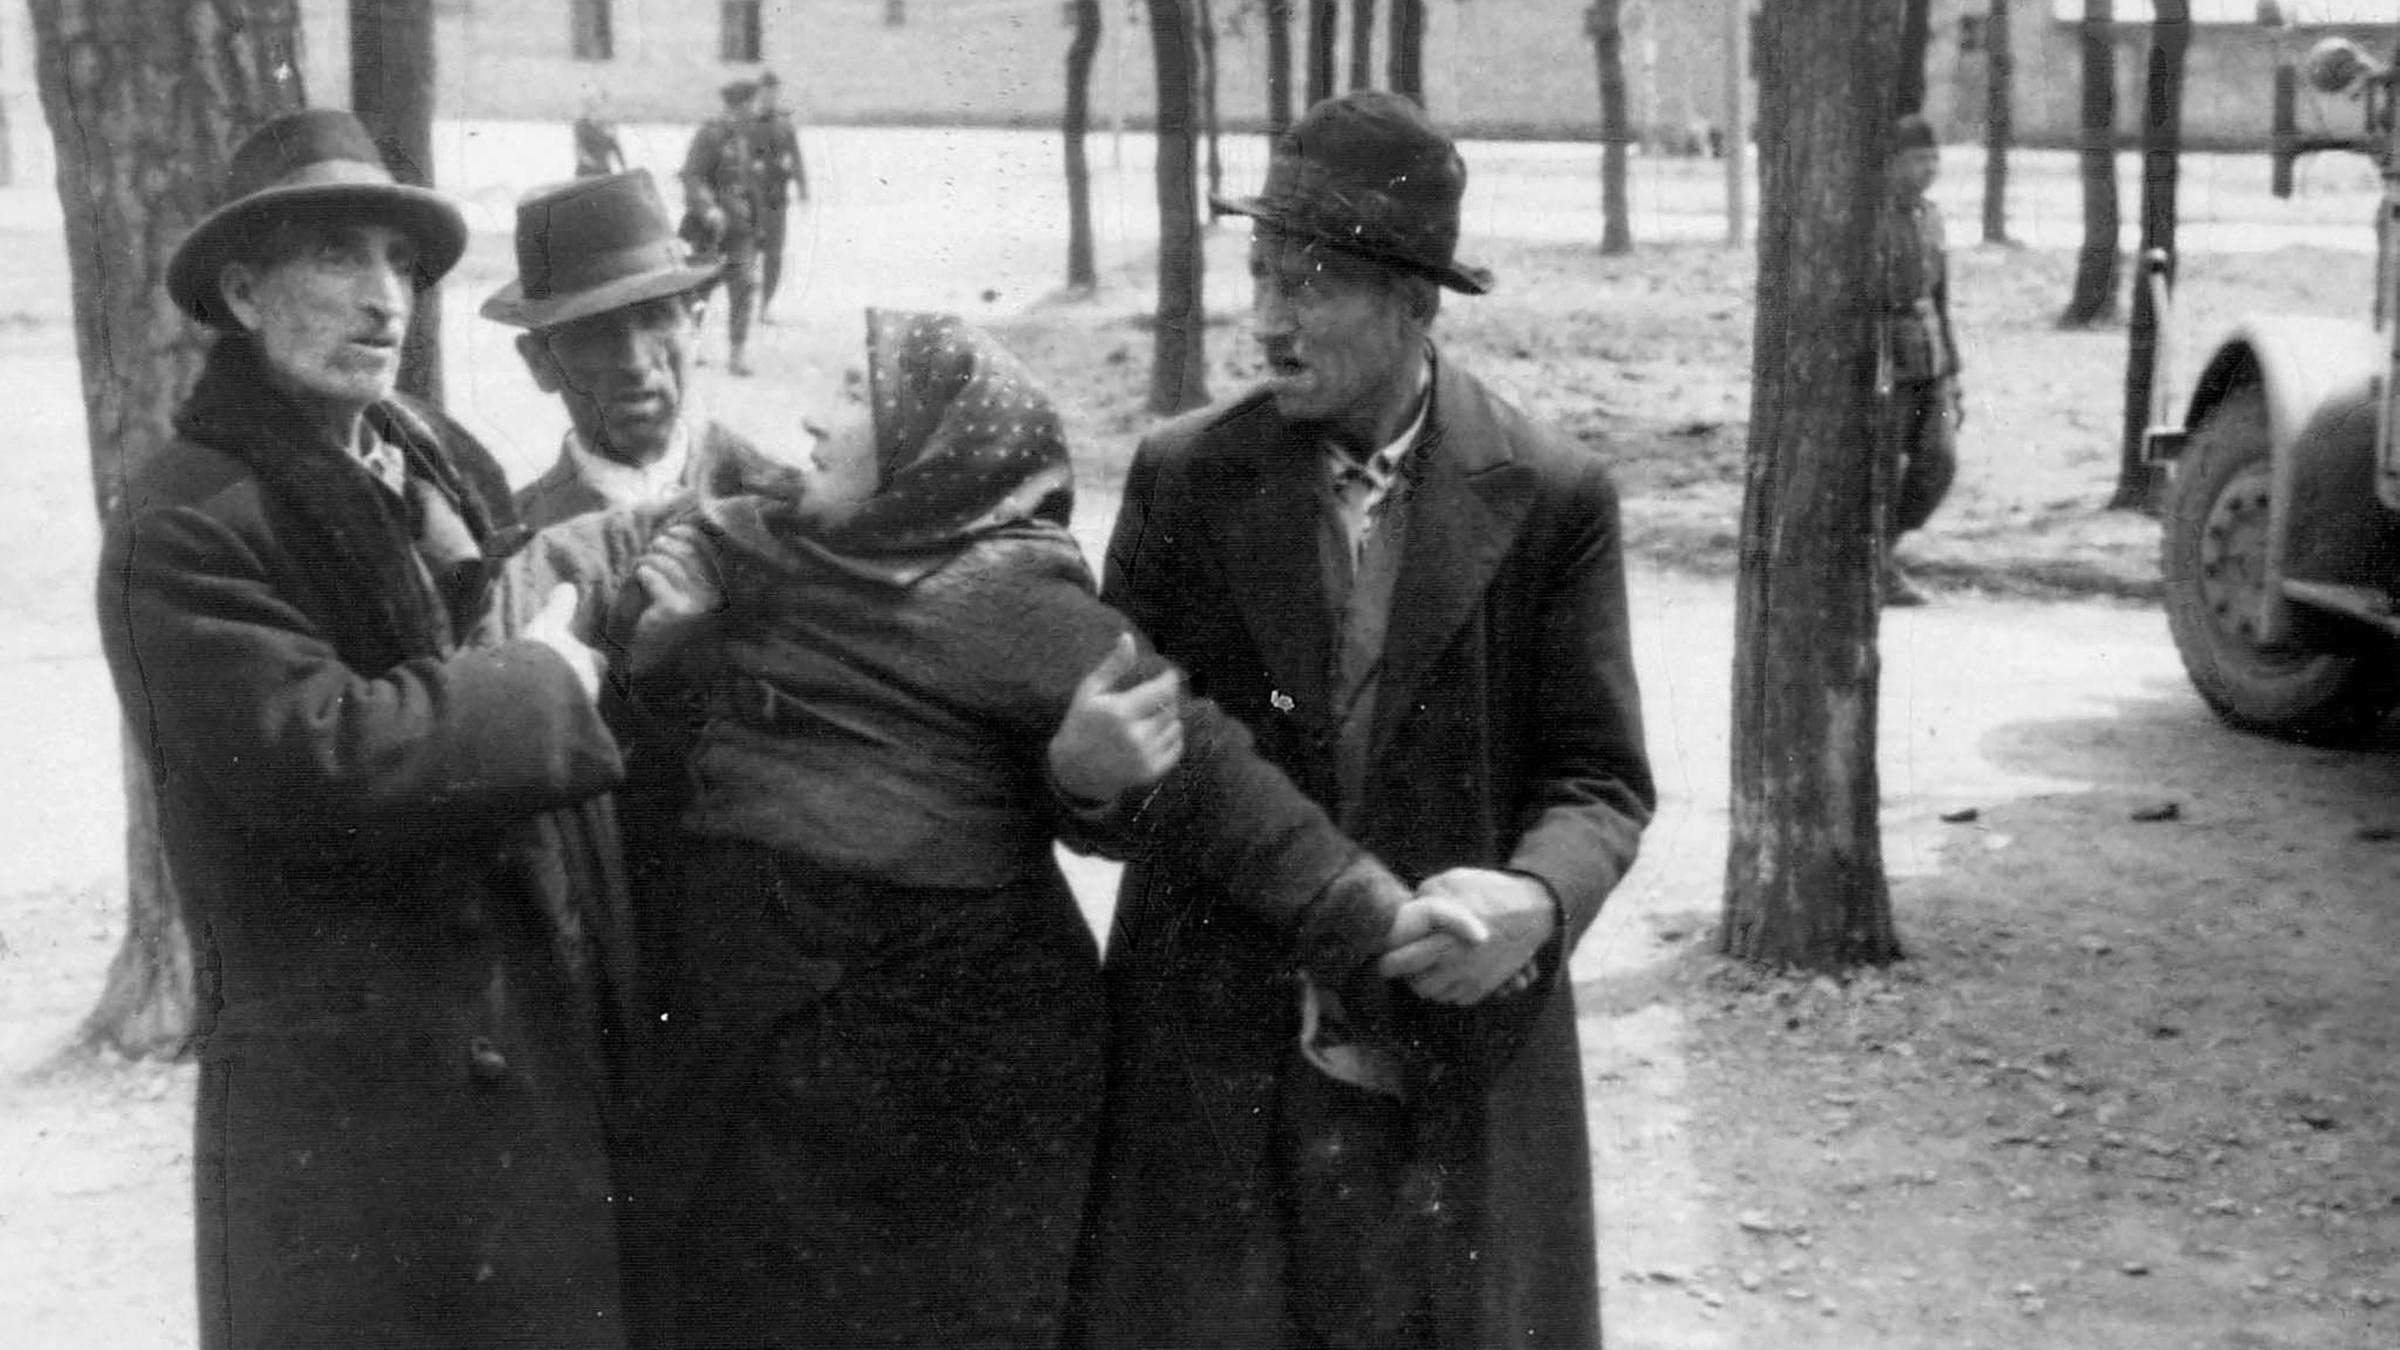 KZ Auschwitz-Birkenau - Rechts ein LKW, mit dem die alte Dame wahrscheinlich von der Rampe zur Gaskammer gebracht wurde